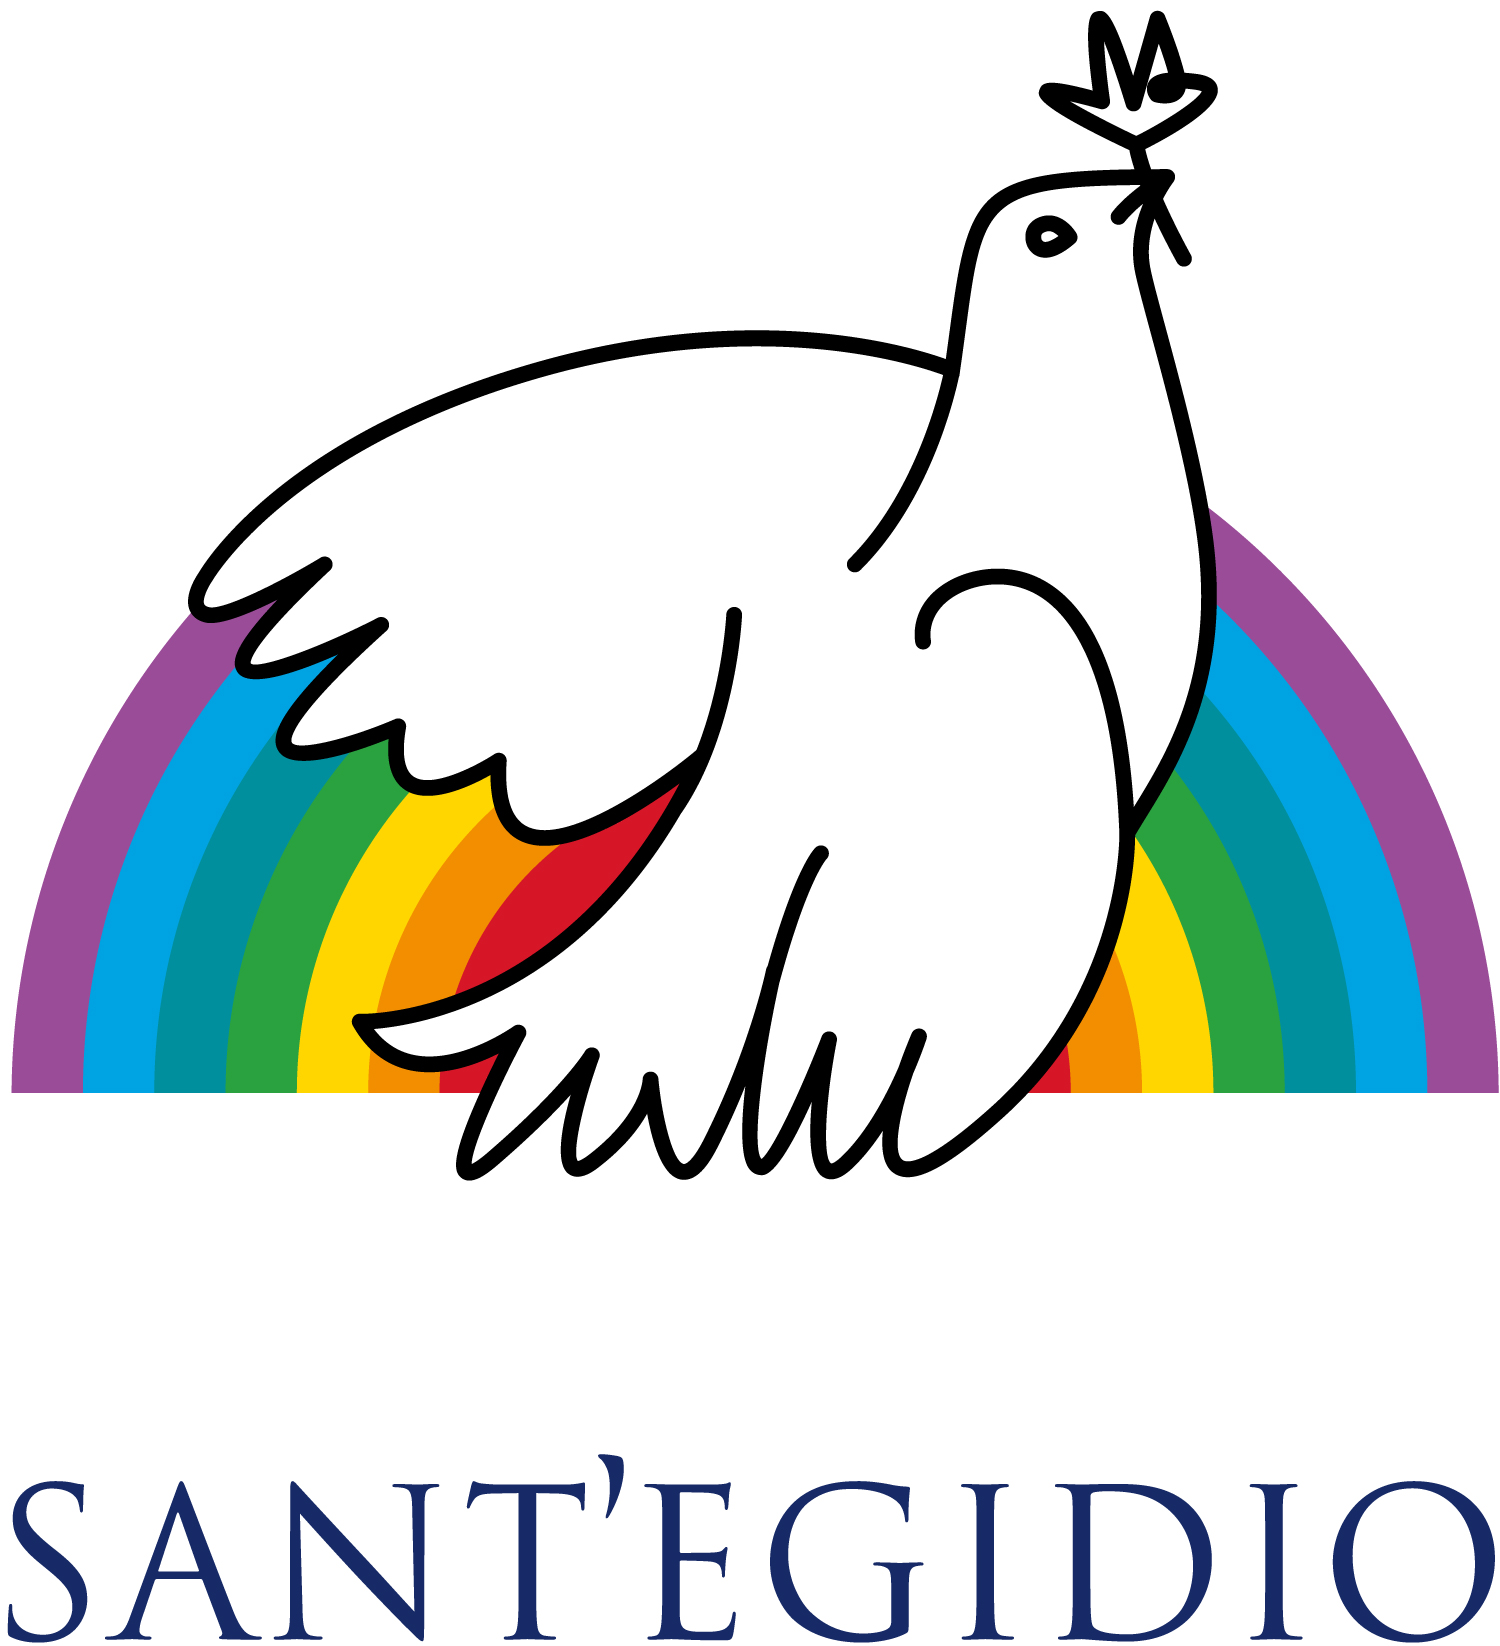 Santegidio